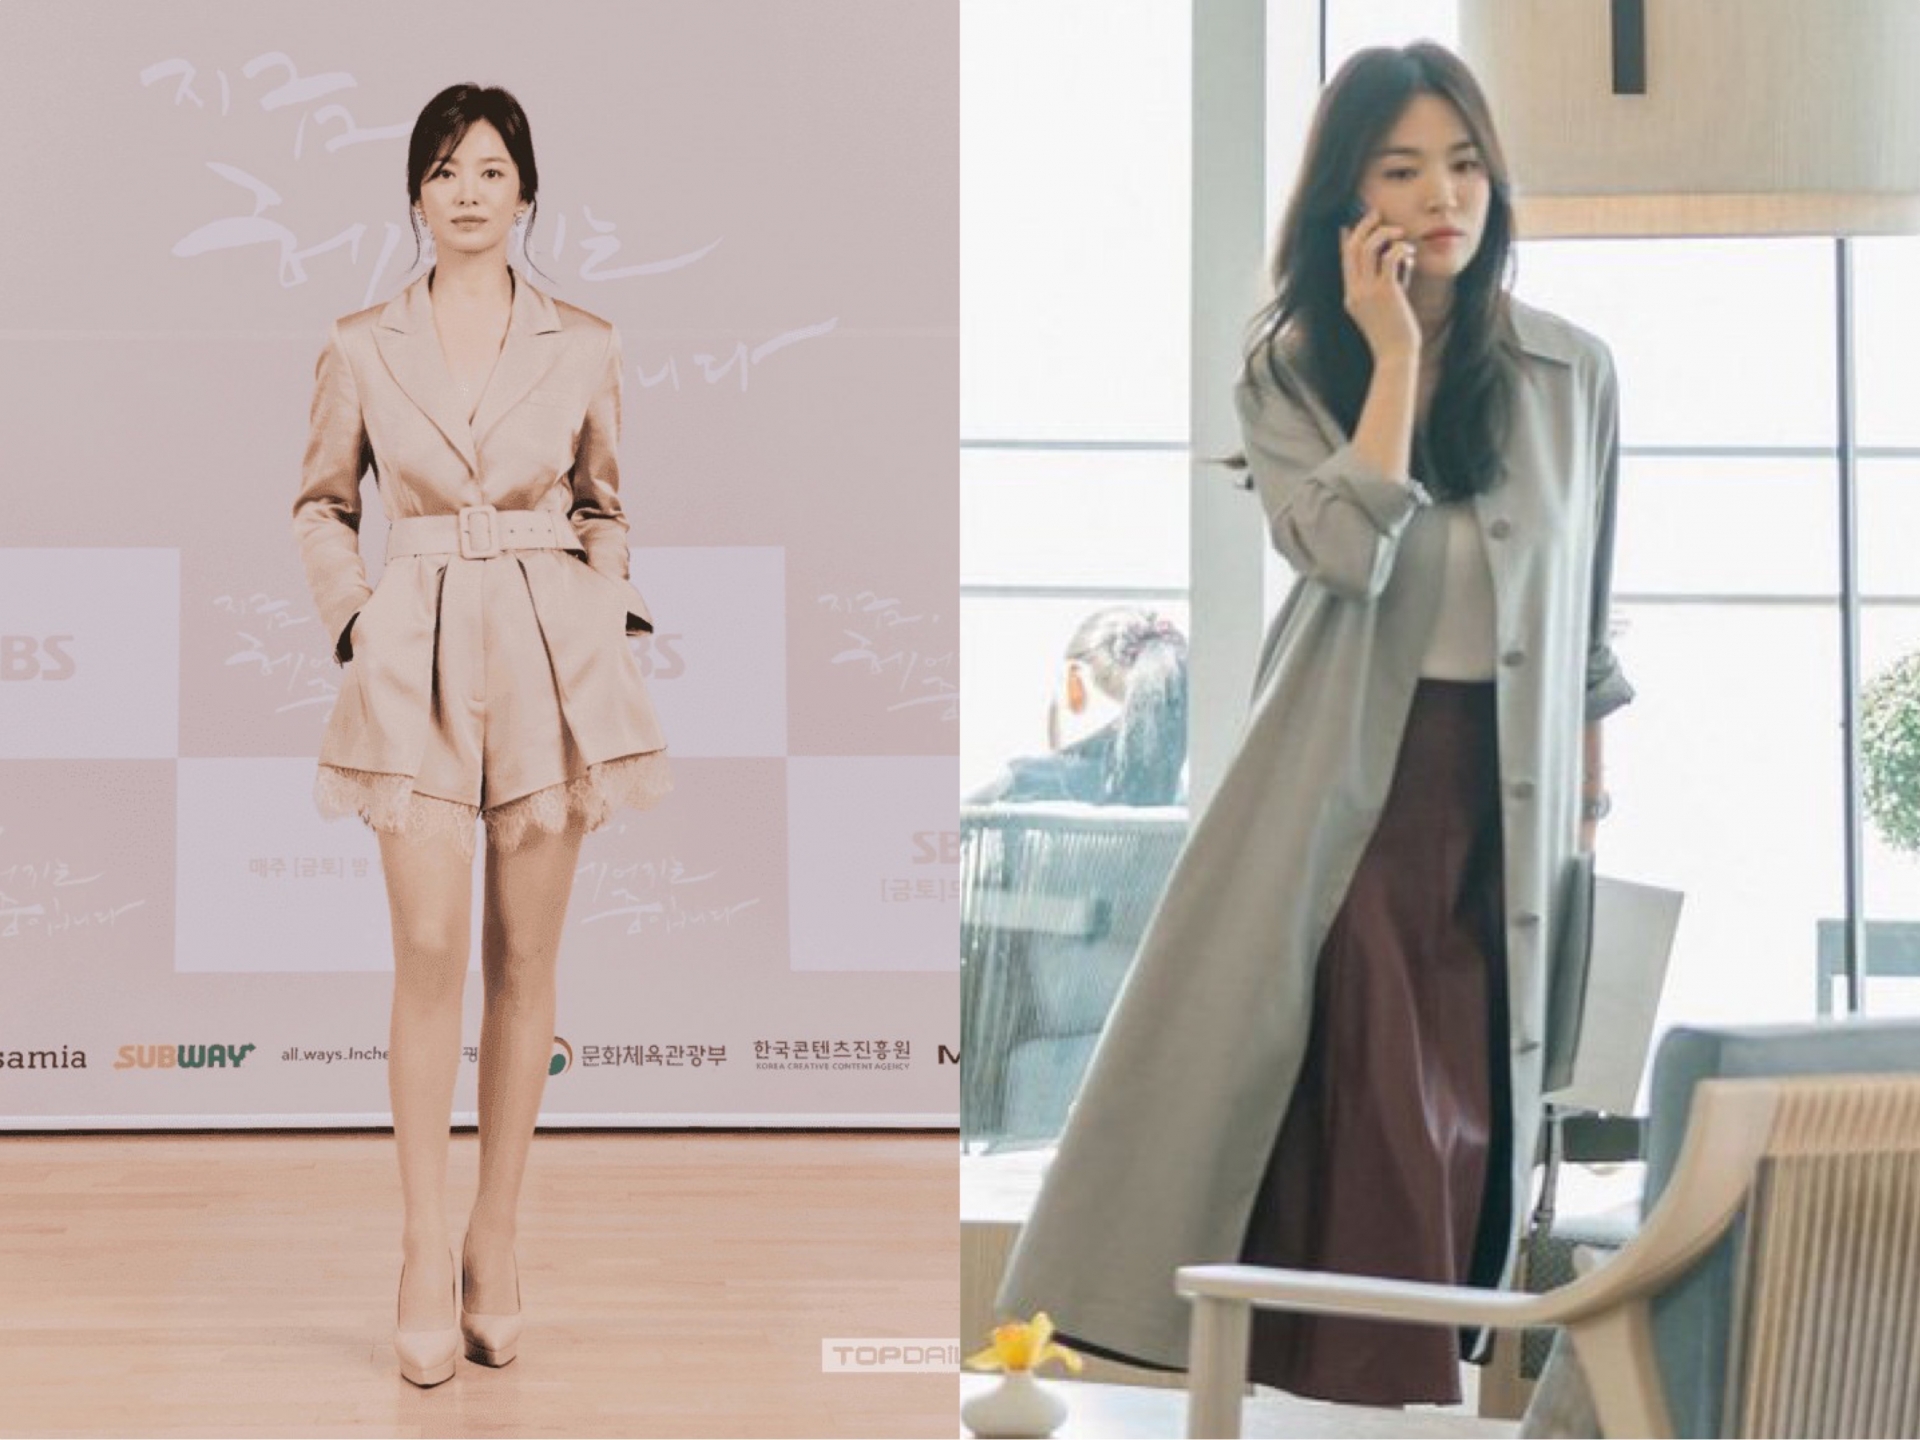 Nhìn thân hình của Song Hye Kyo, chẳng ai nghĩ người đẹp đã từng nặng đến 70kg trong thời gian đi học. Dù không có lợi thế về chiều cao nhưng người đẹp lại sở hữu thân hình rất thon thả, vòng nào ra vòng nấy chẳng kém những cô gái đôi mươi.